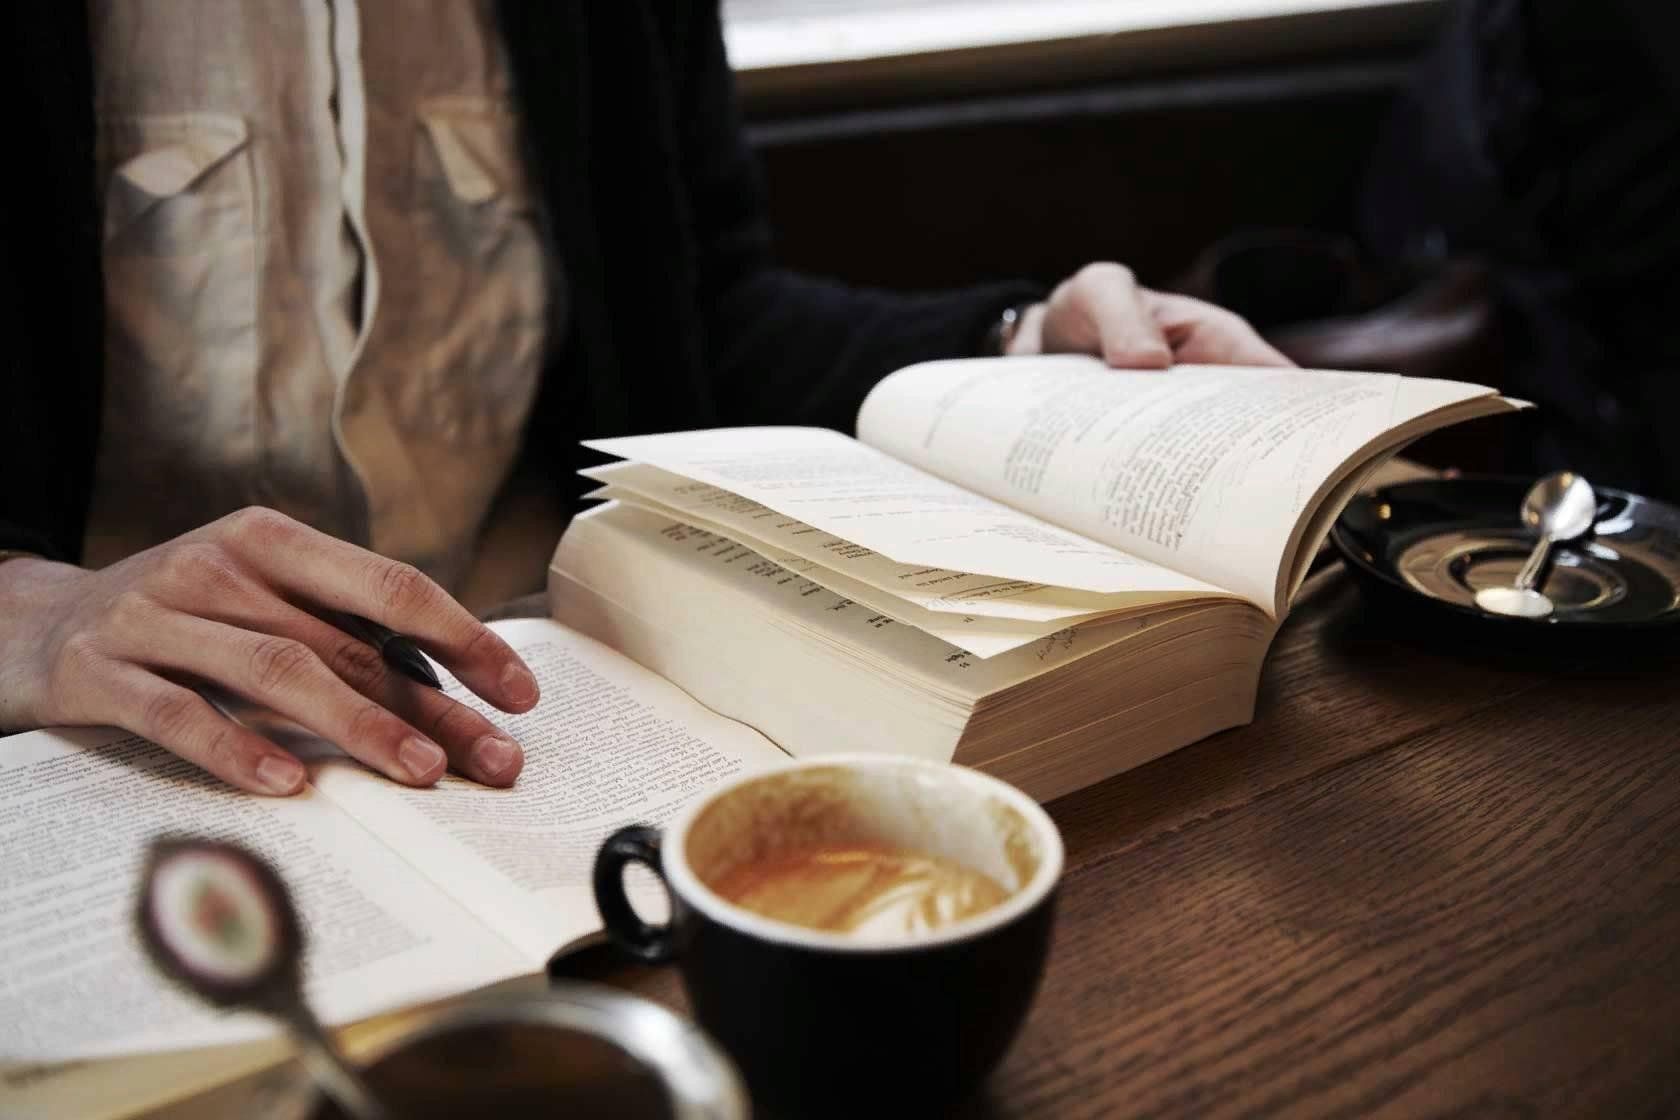 Читать страница 28. Книга о кофе. Стол «книга». Стол писателя. Чтение в кафе.